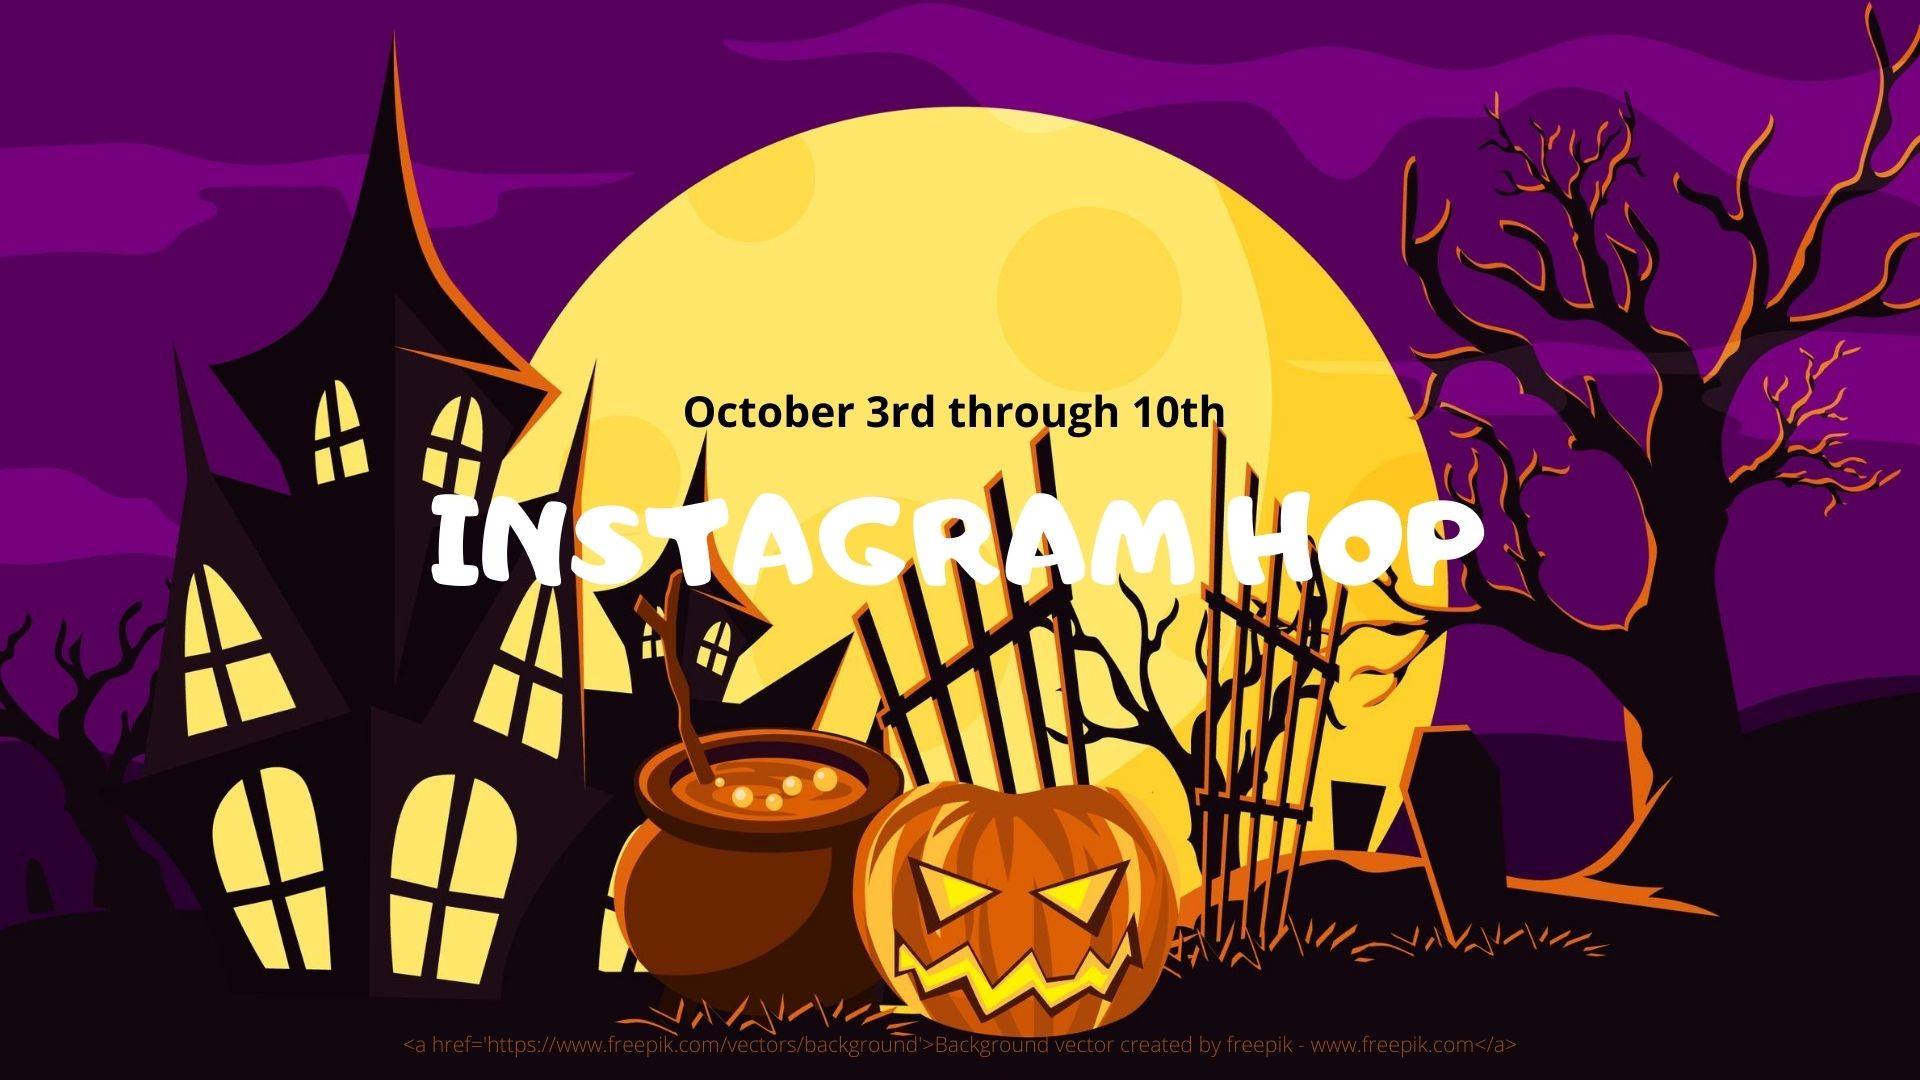 Halloween Instagram Hop